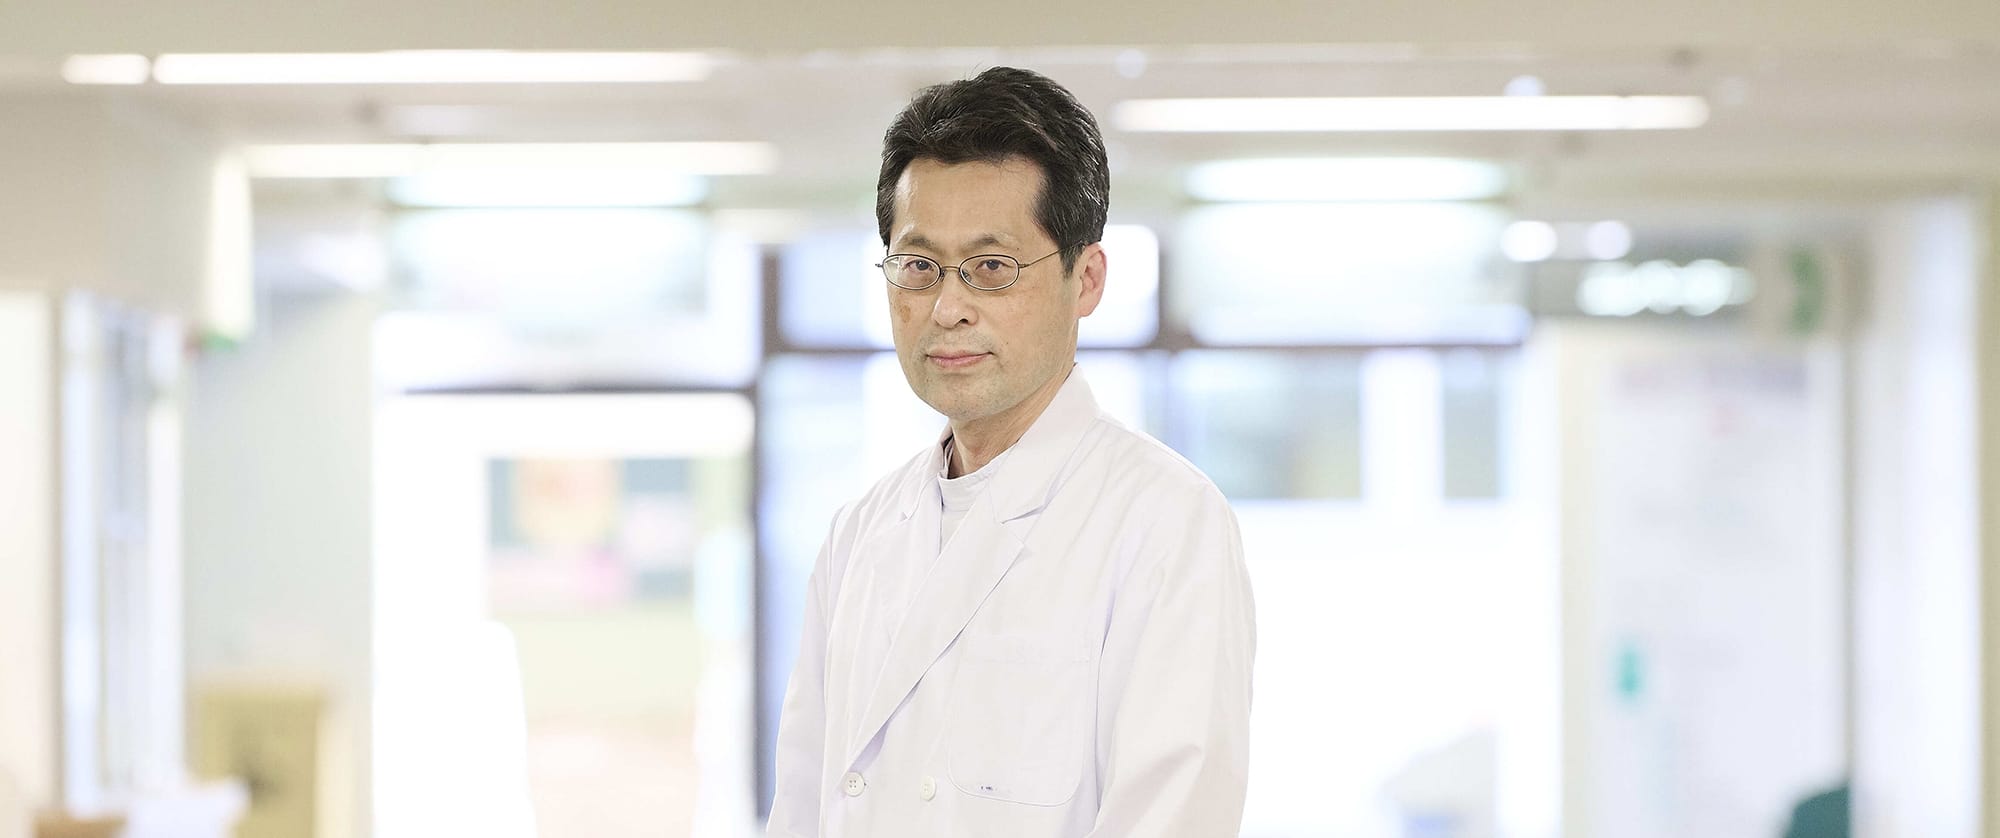 臨床検査医学科 診療科長 田中医師のインタビューを公開しました。